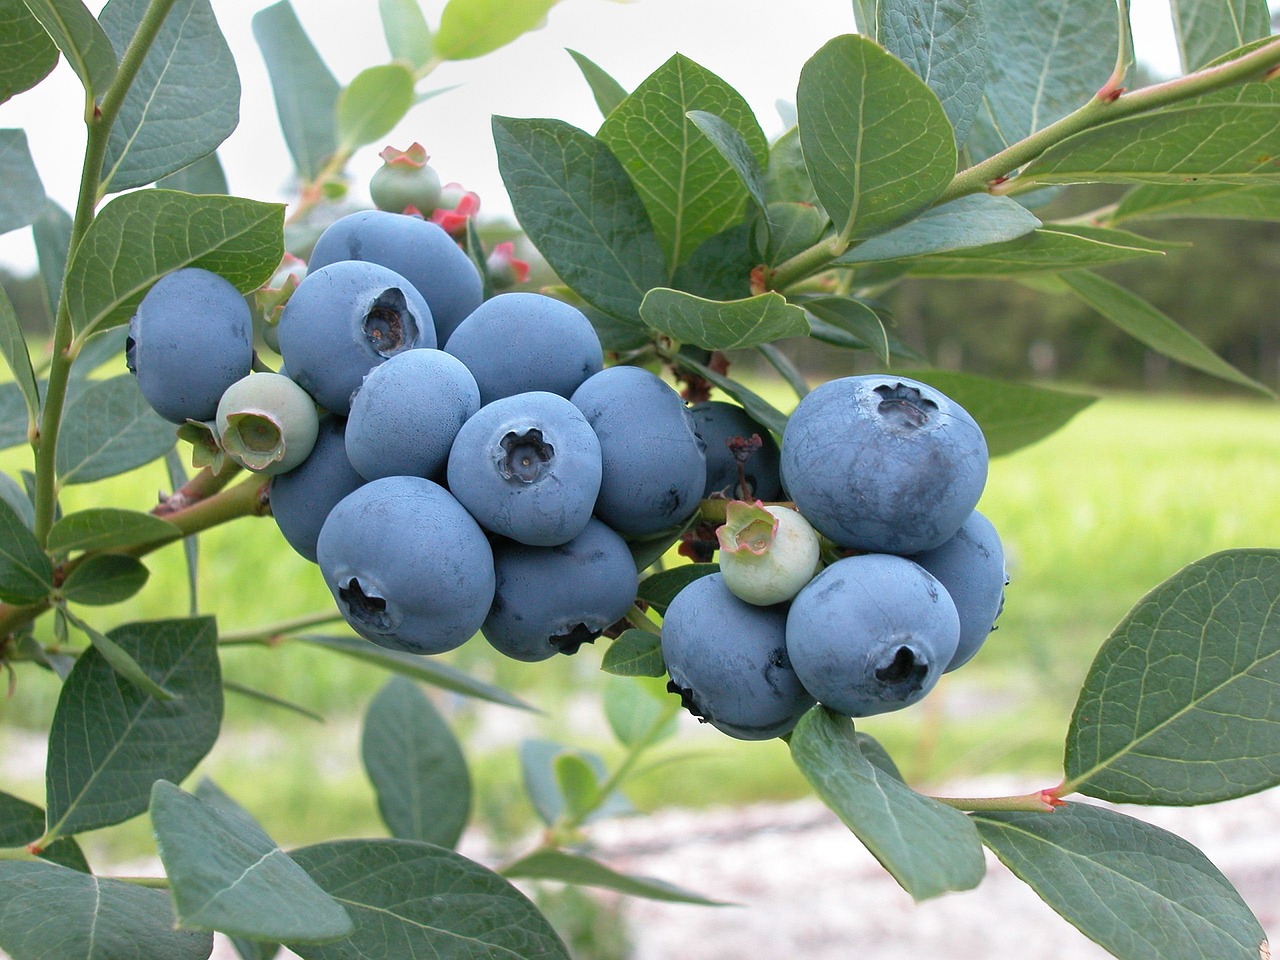 Seasonal berries ripening on the tree